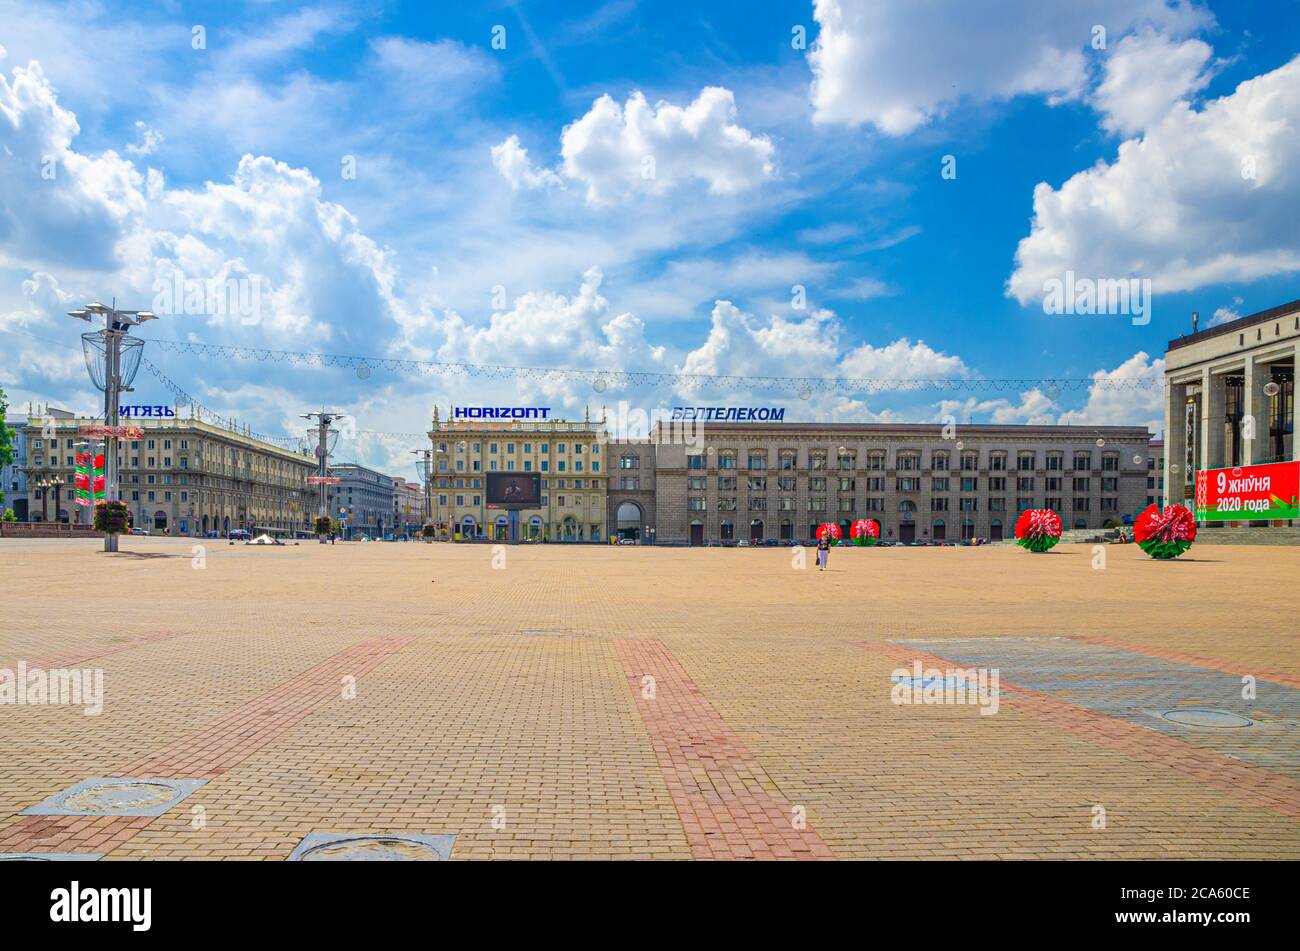 Minsk, Bielorussia, 26 luglio 2020: Piazza del Classicismo Socialista edifici in stile Impero Stalin, nuvole blu cielo bianco nella soleggiata giornata estiva Foto Stock